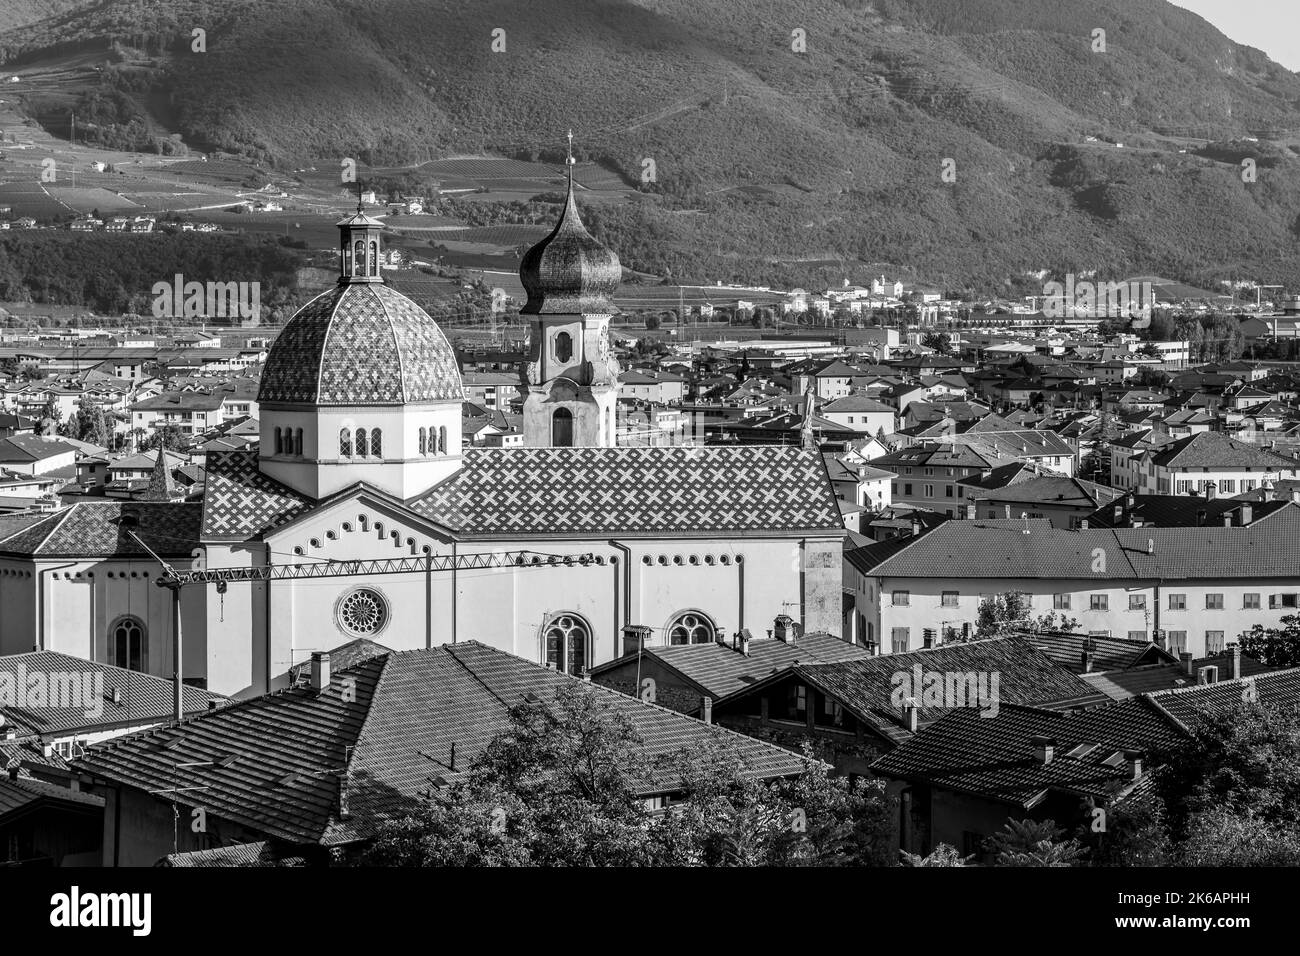 La cupola e il campanile della Chiesa di Santa Maria Assunta, Mezzocorona, piana Rotaliana, Trentino-Alto Adige, Italia, 12th ° secolo. Foto Stock